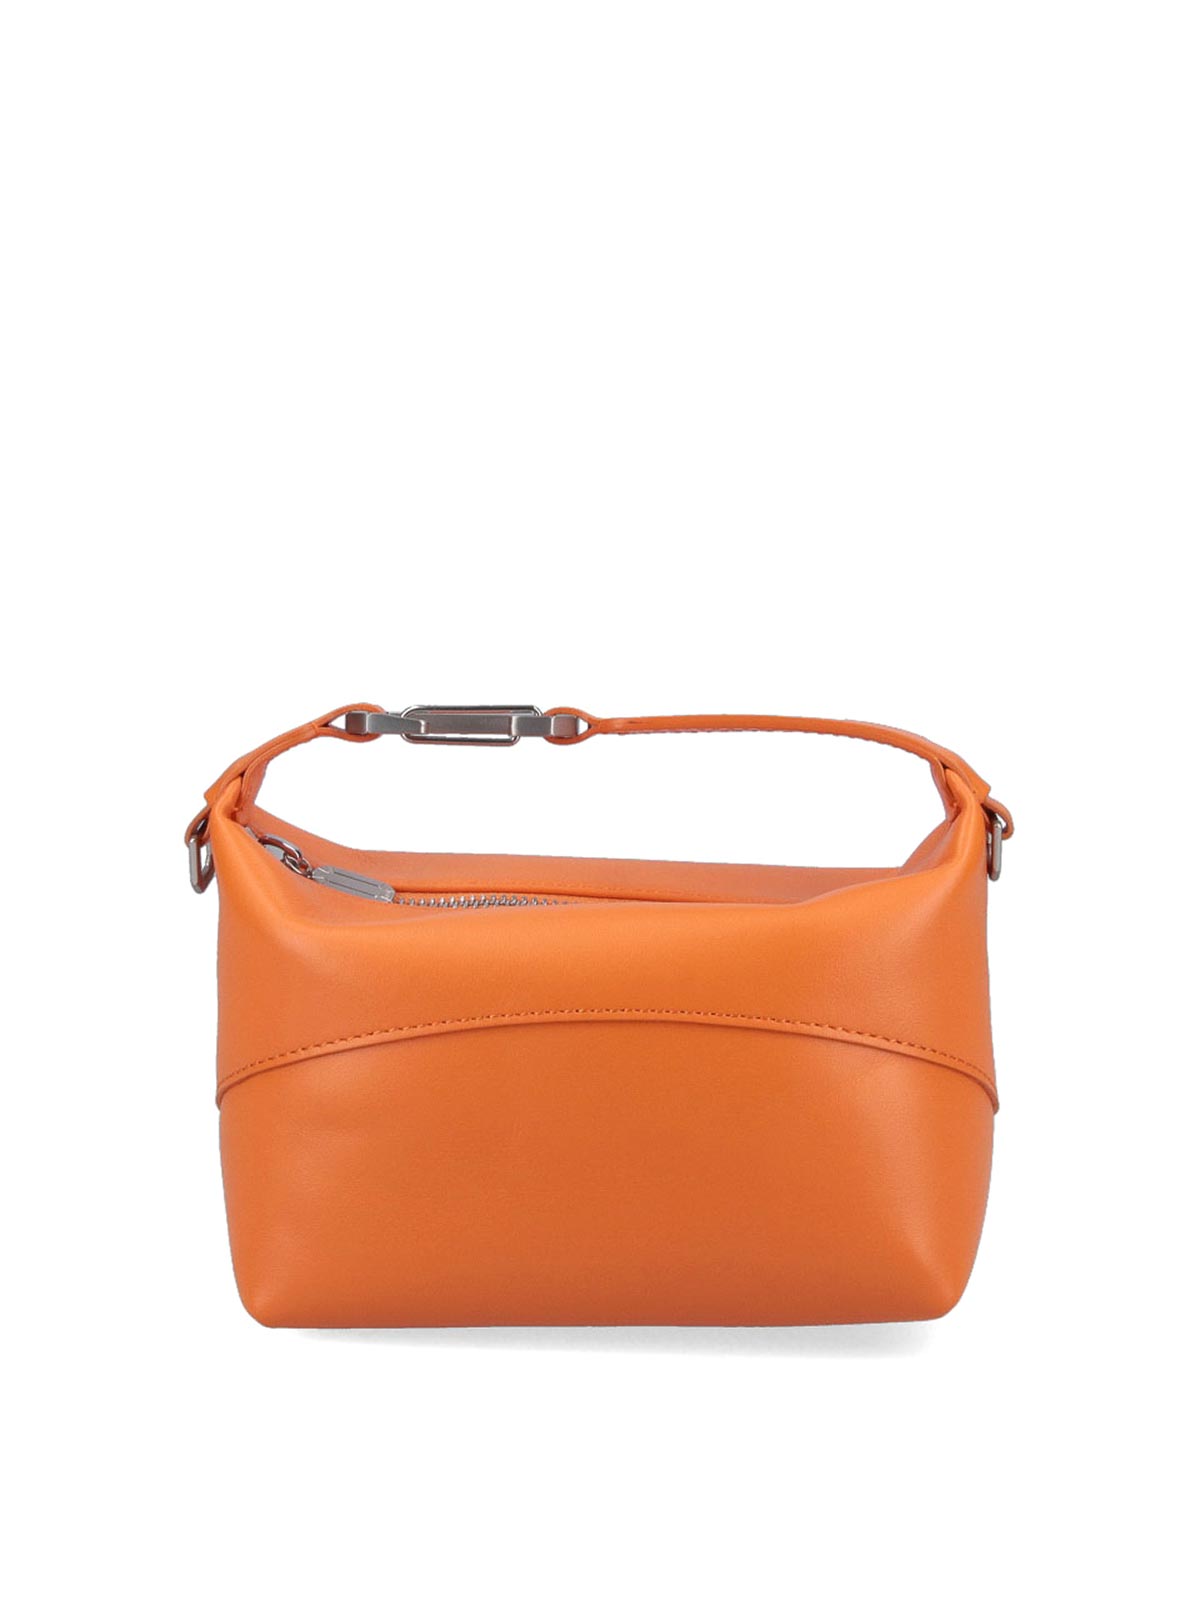 Eéra Handbag In Orange